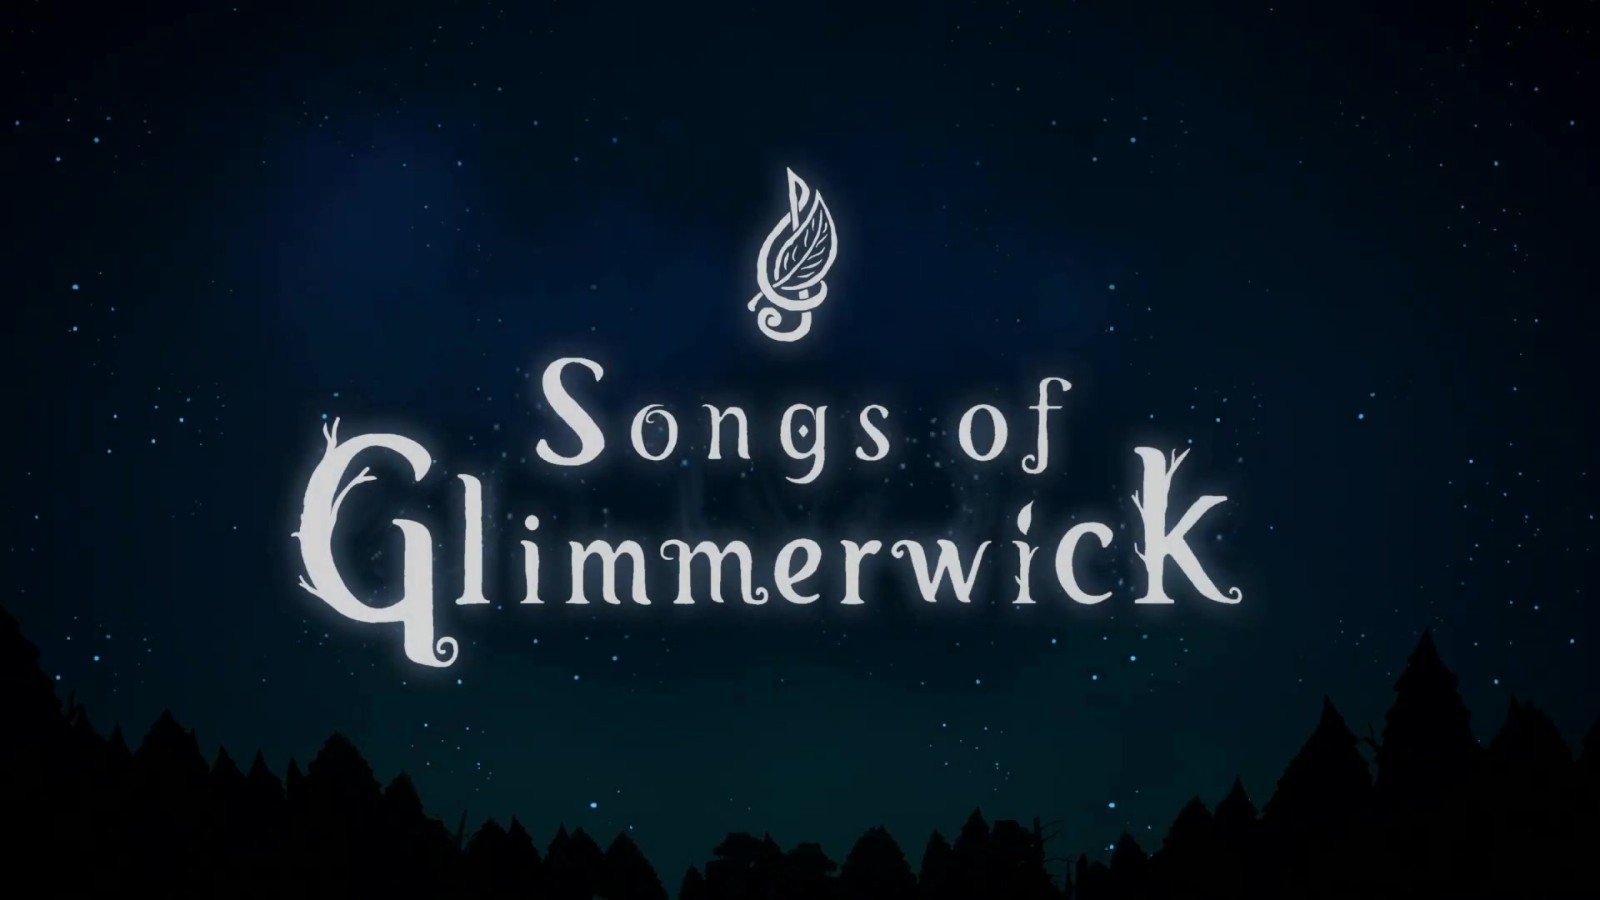 剧情驱动女巫学院RPG《格林默威克之歌》公布